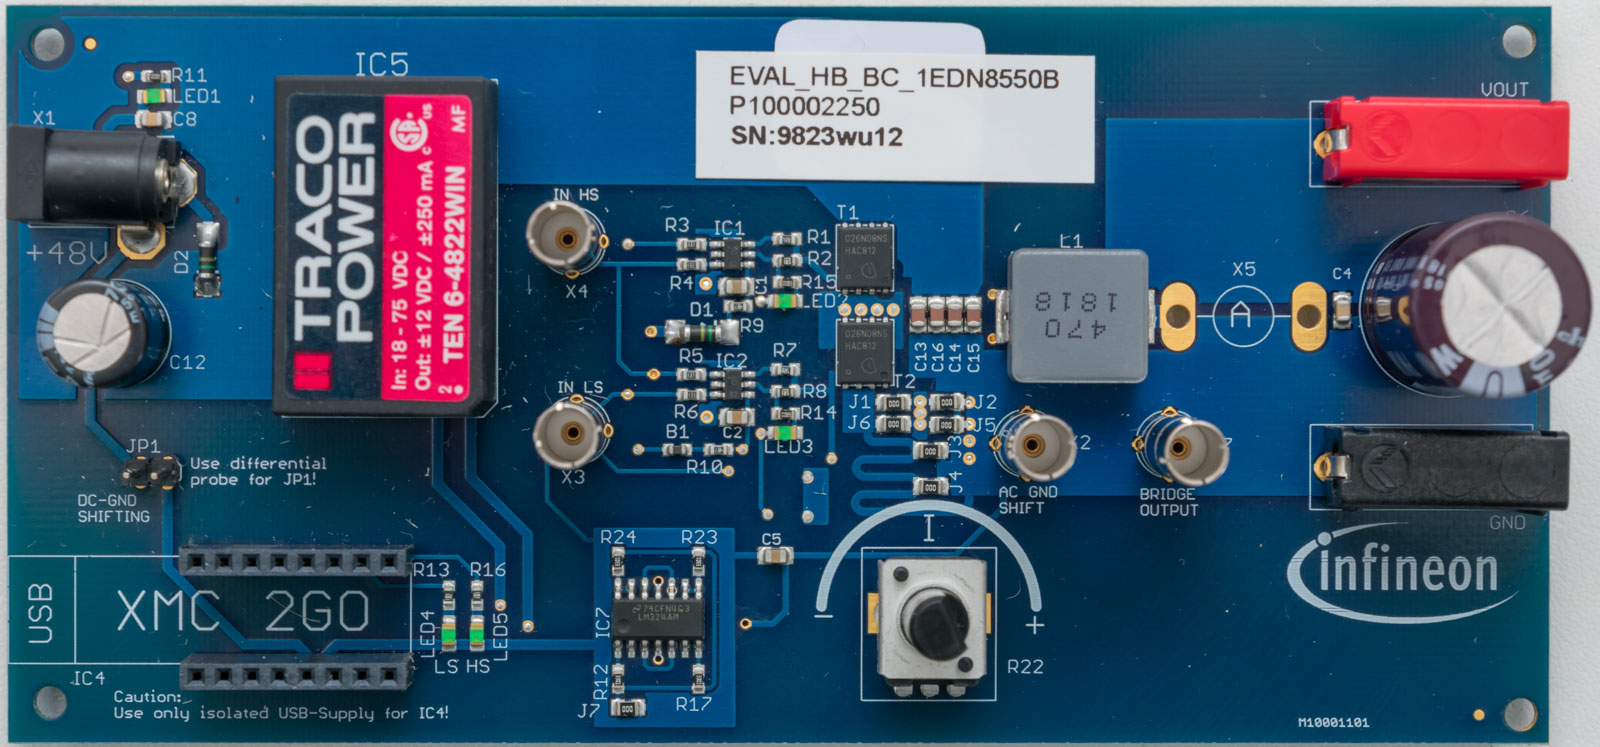 Memtool. Изолированный MOSFET. Драйвер управления мосфетами контроллера Infineon 4. Infineon 3 программа. Gate Driver.